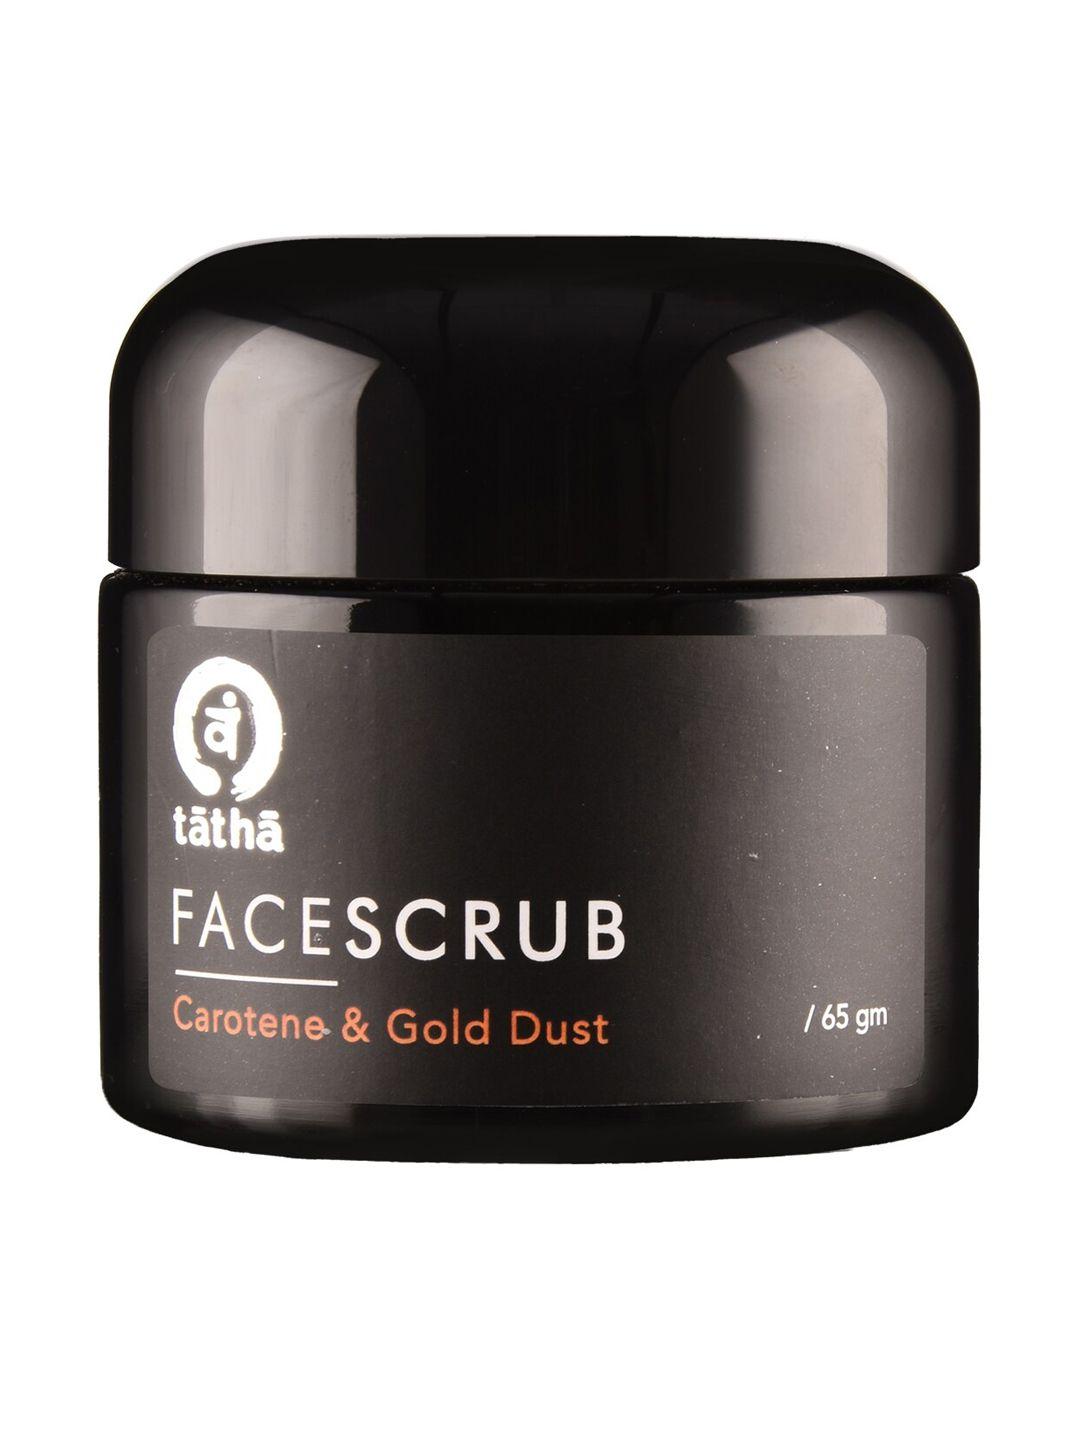 tatha face scrub carotene & gold dust - 65 gm